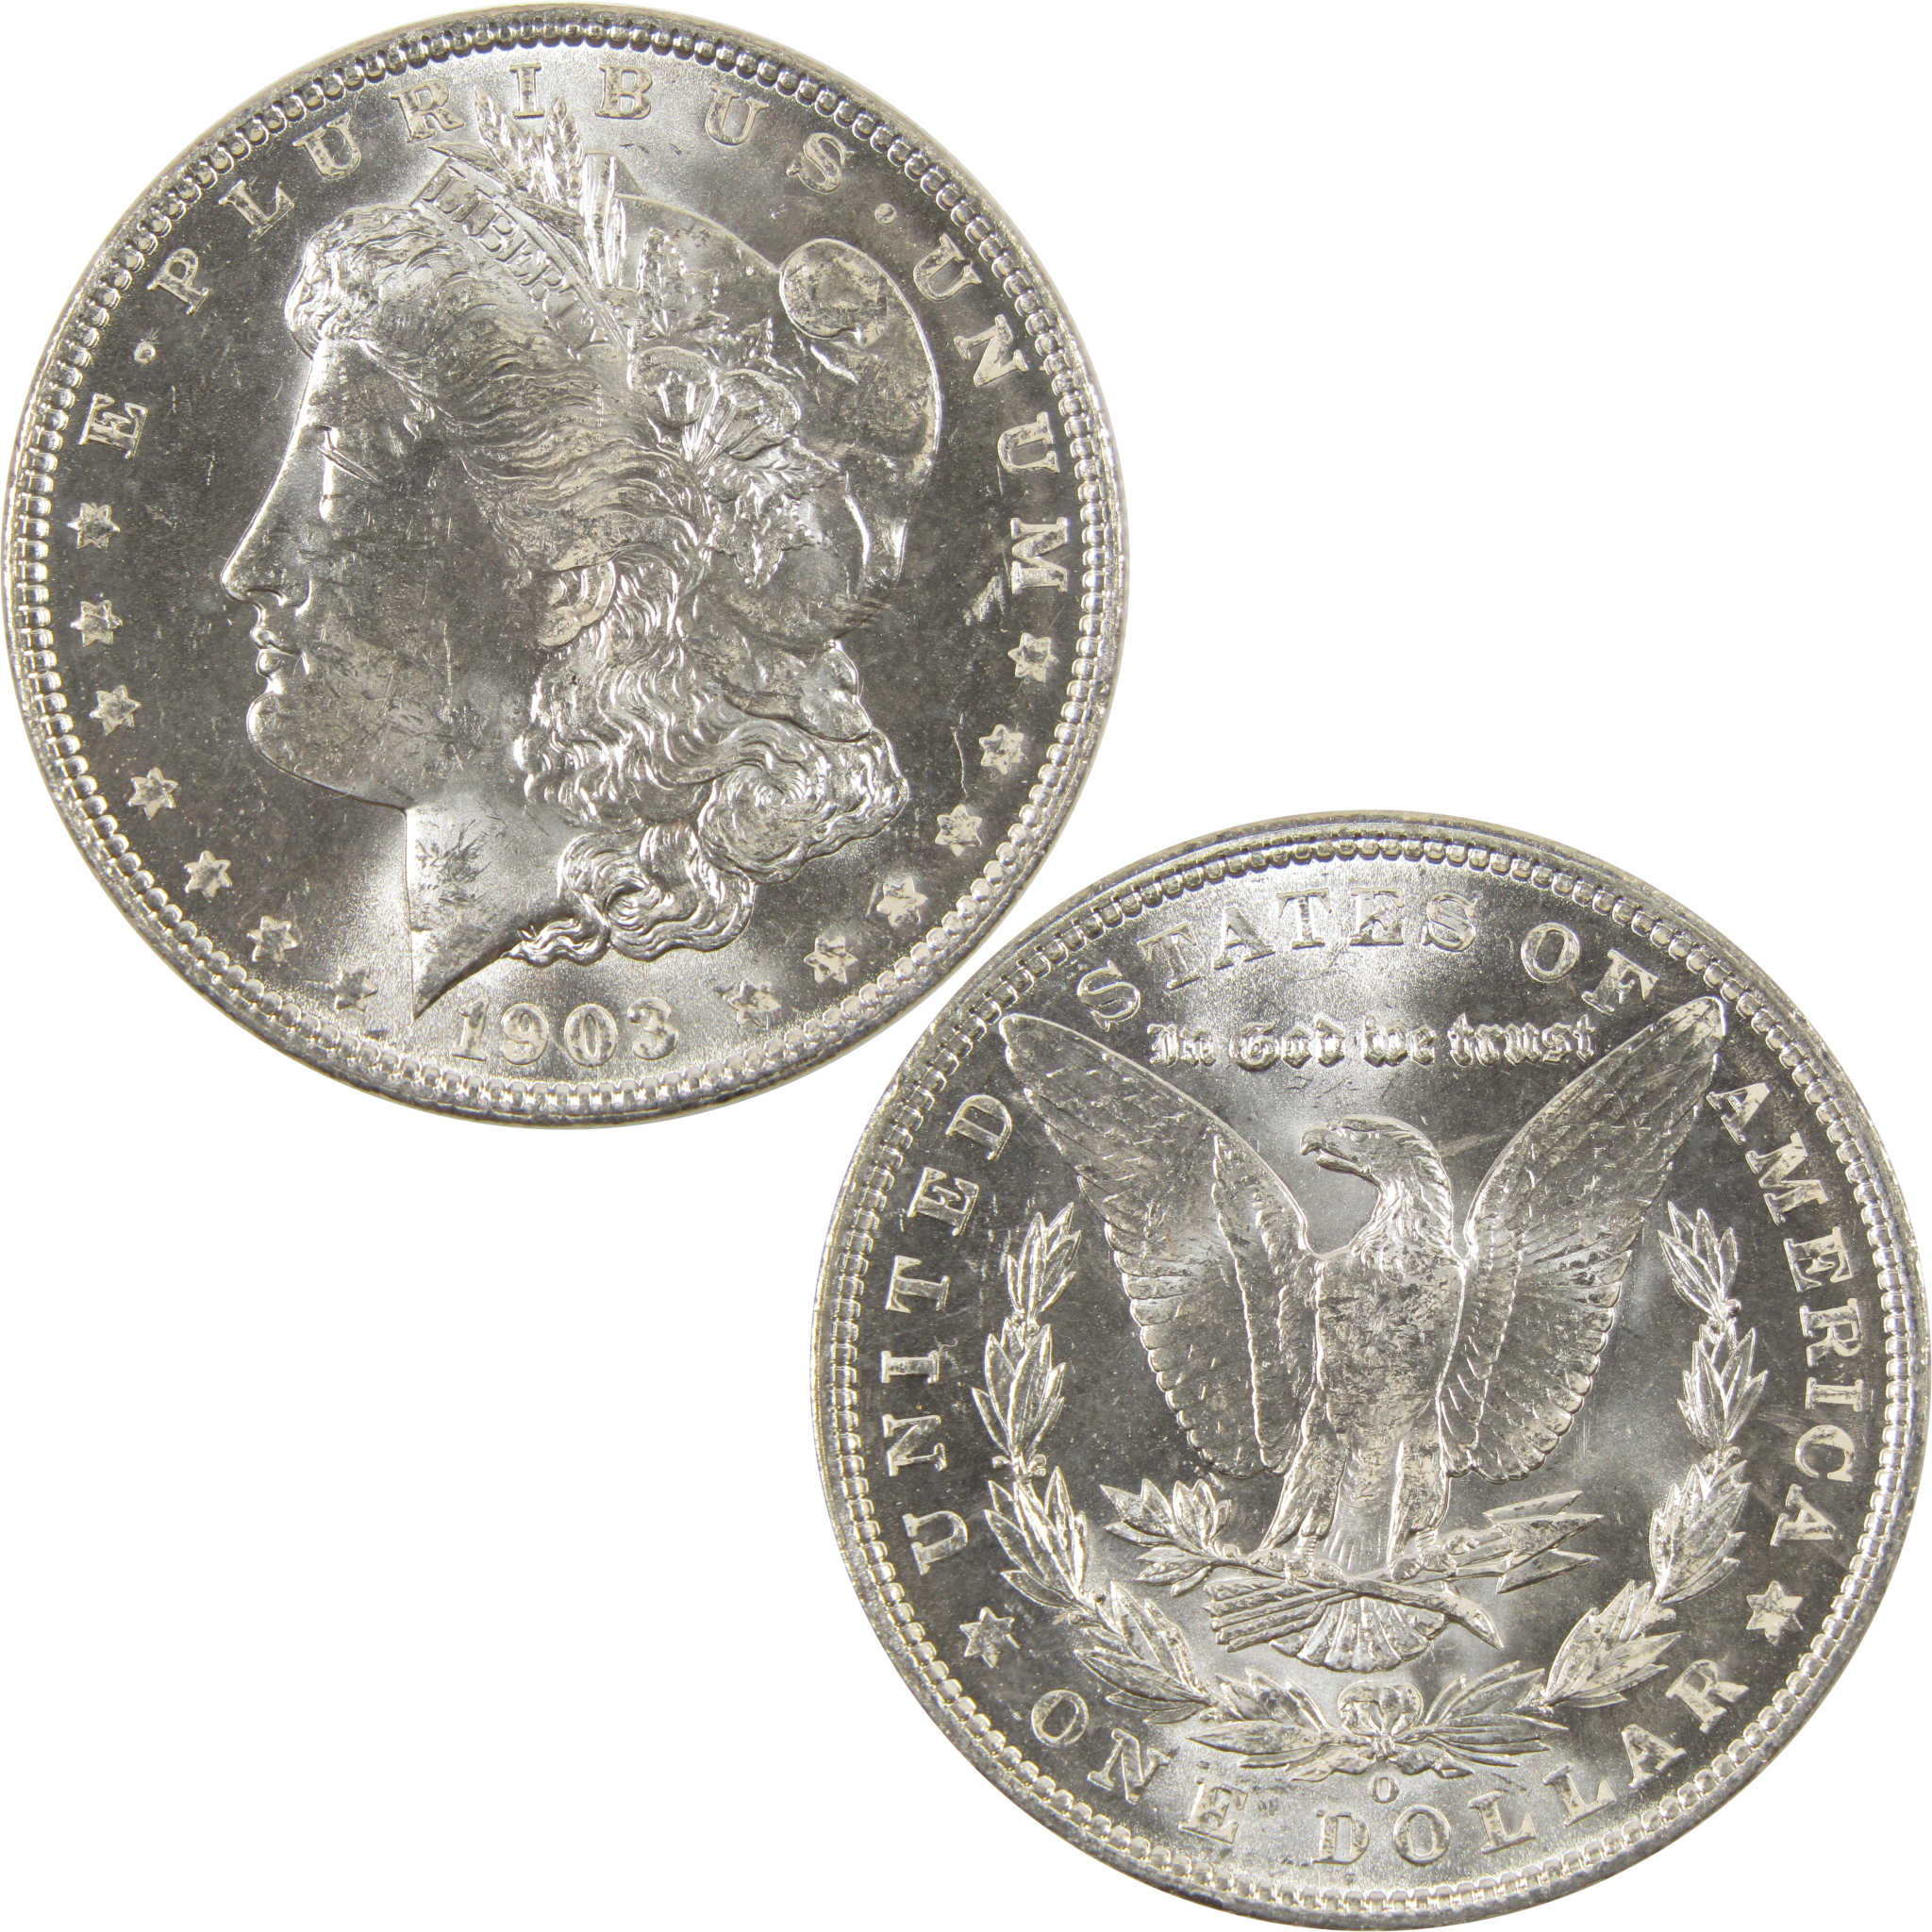 1903 O Morgan Dollar BU Choice Uncirculated 90% Silver $1 SKU:I7515 - Morgan coin - Morgan silver dollar - Morgan silver dollar for sale - Profile Coins &amp; Collectibles